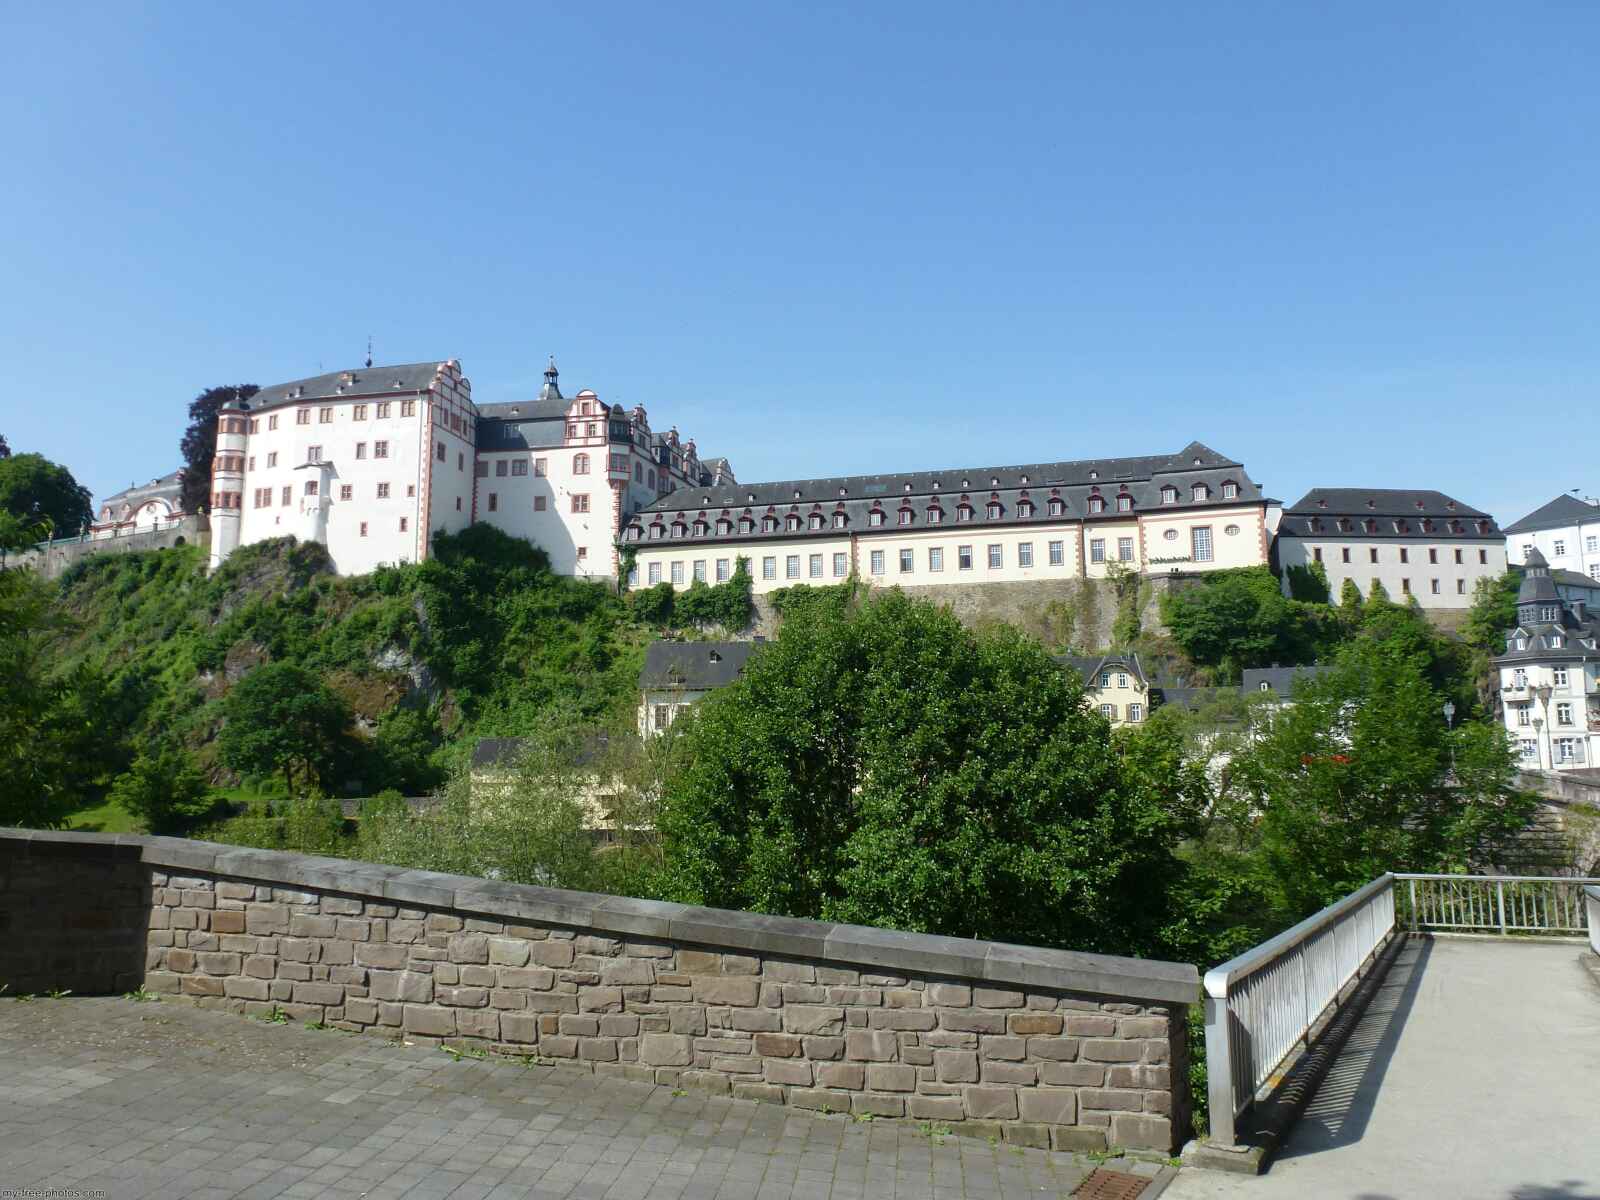 Castle weilburg